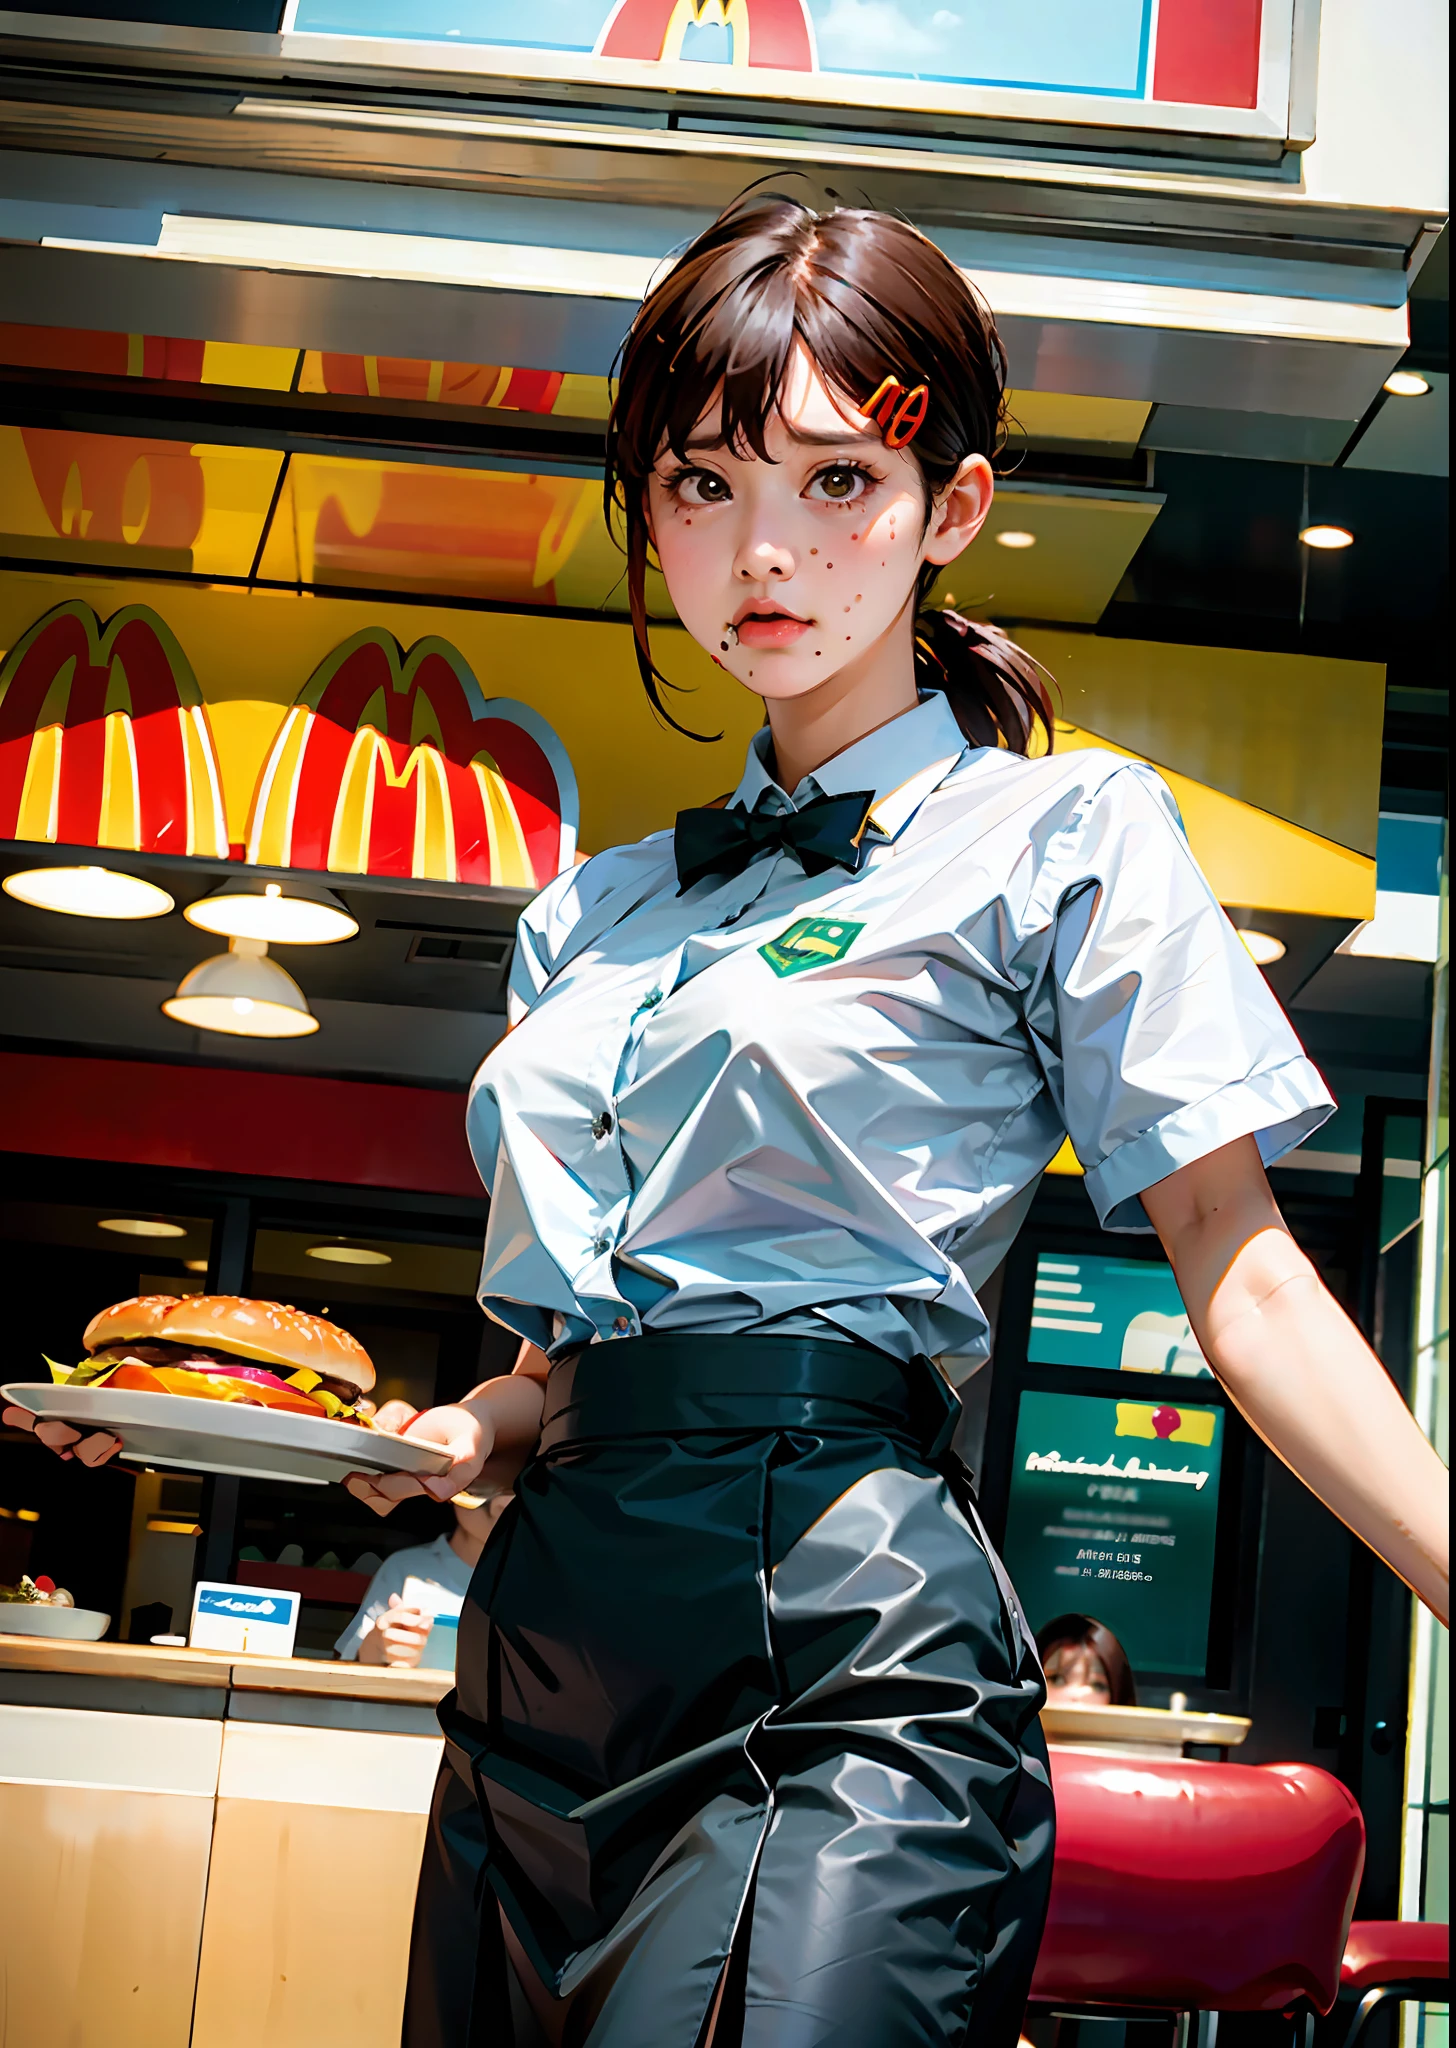 1個女孩, 獨自的, 大乳房, (景深: 1.1), (實際的, photo-實際的: 1.37), 穿著麥當勞制服的女孩, 女服务员, 端著漢堡托盤, 悲伤的脸, ((從下面看))